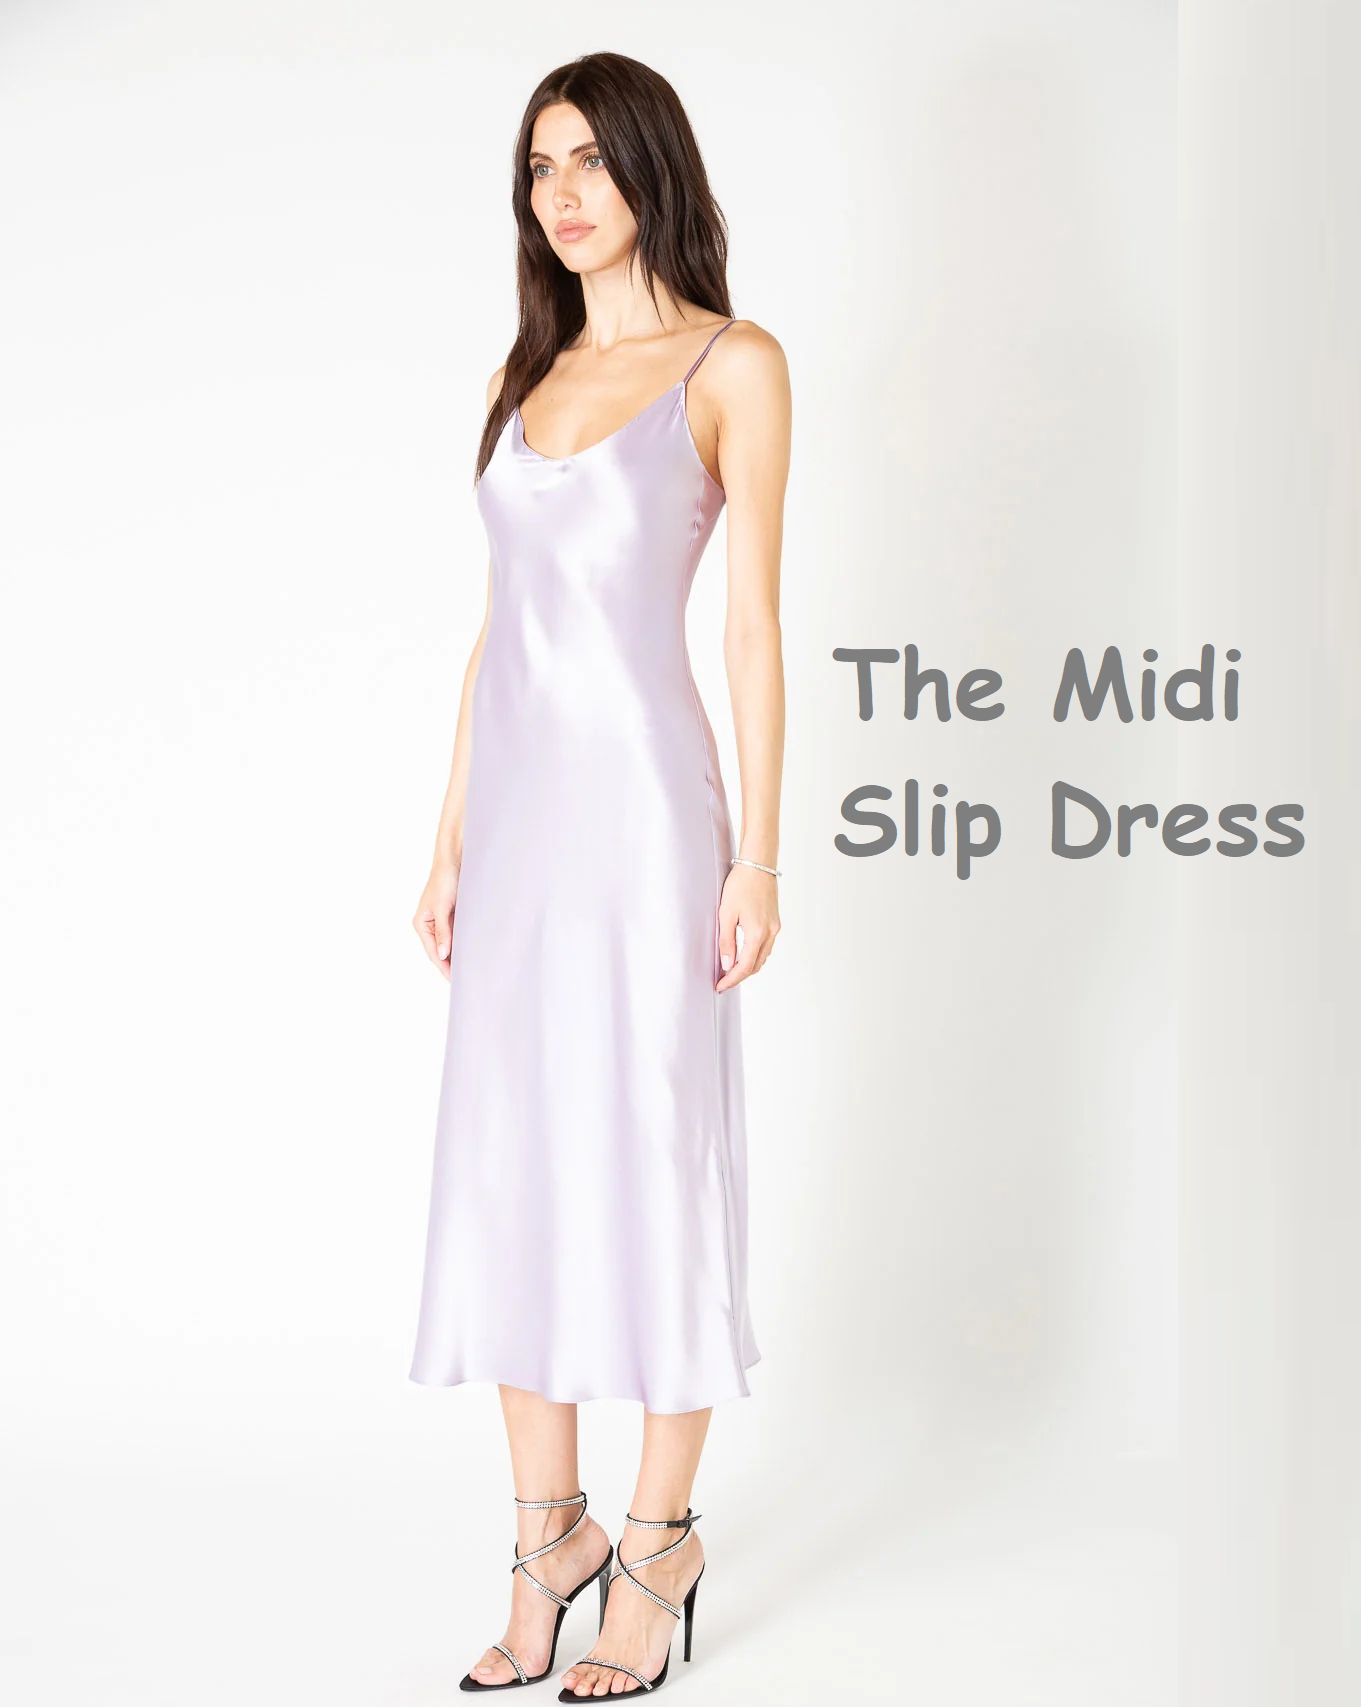 The midi slip dress